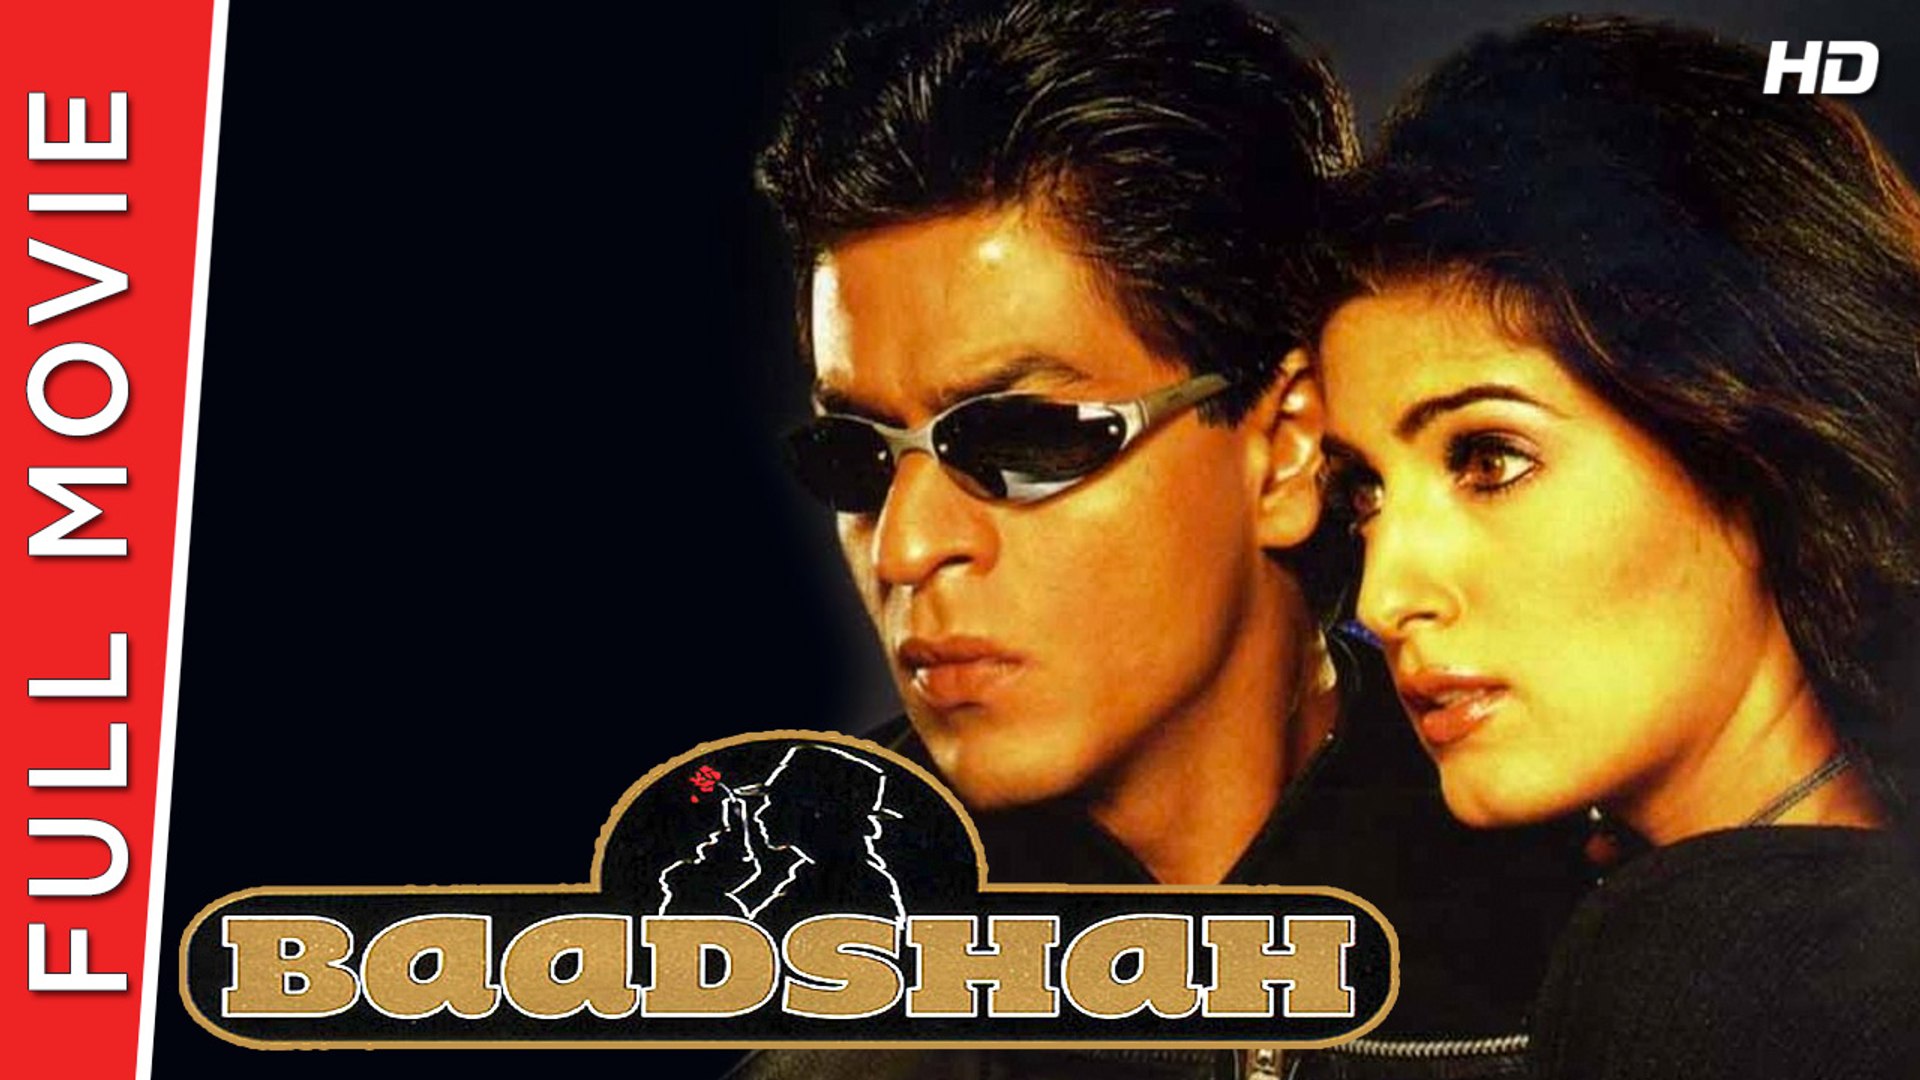 Baadshah | Full Hindi Movie | Shahrukh Khan, Twinkle Khanna, Deepshikha |  Full HD 1080p - video Dailymotion